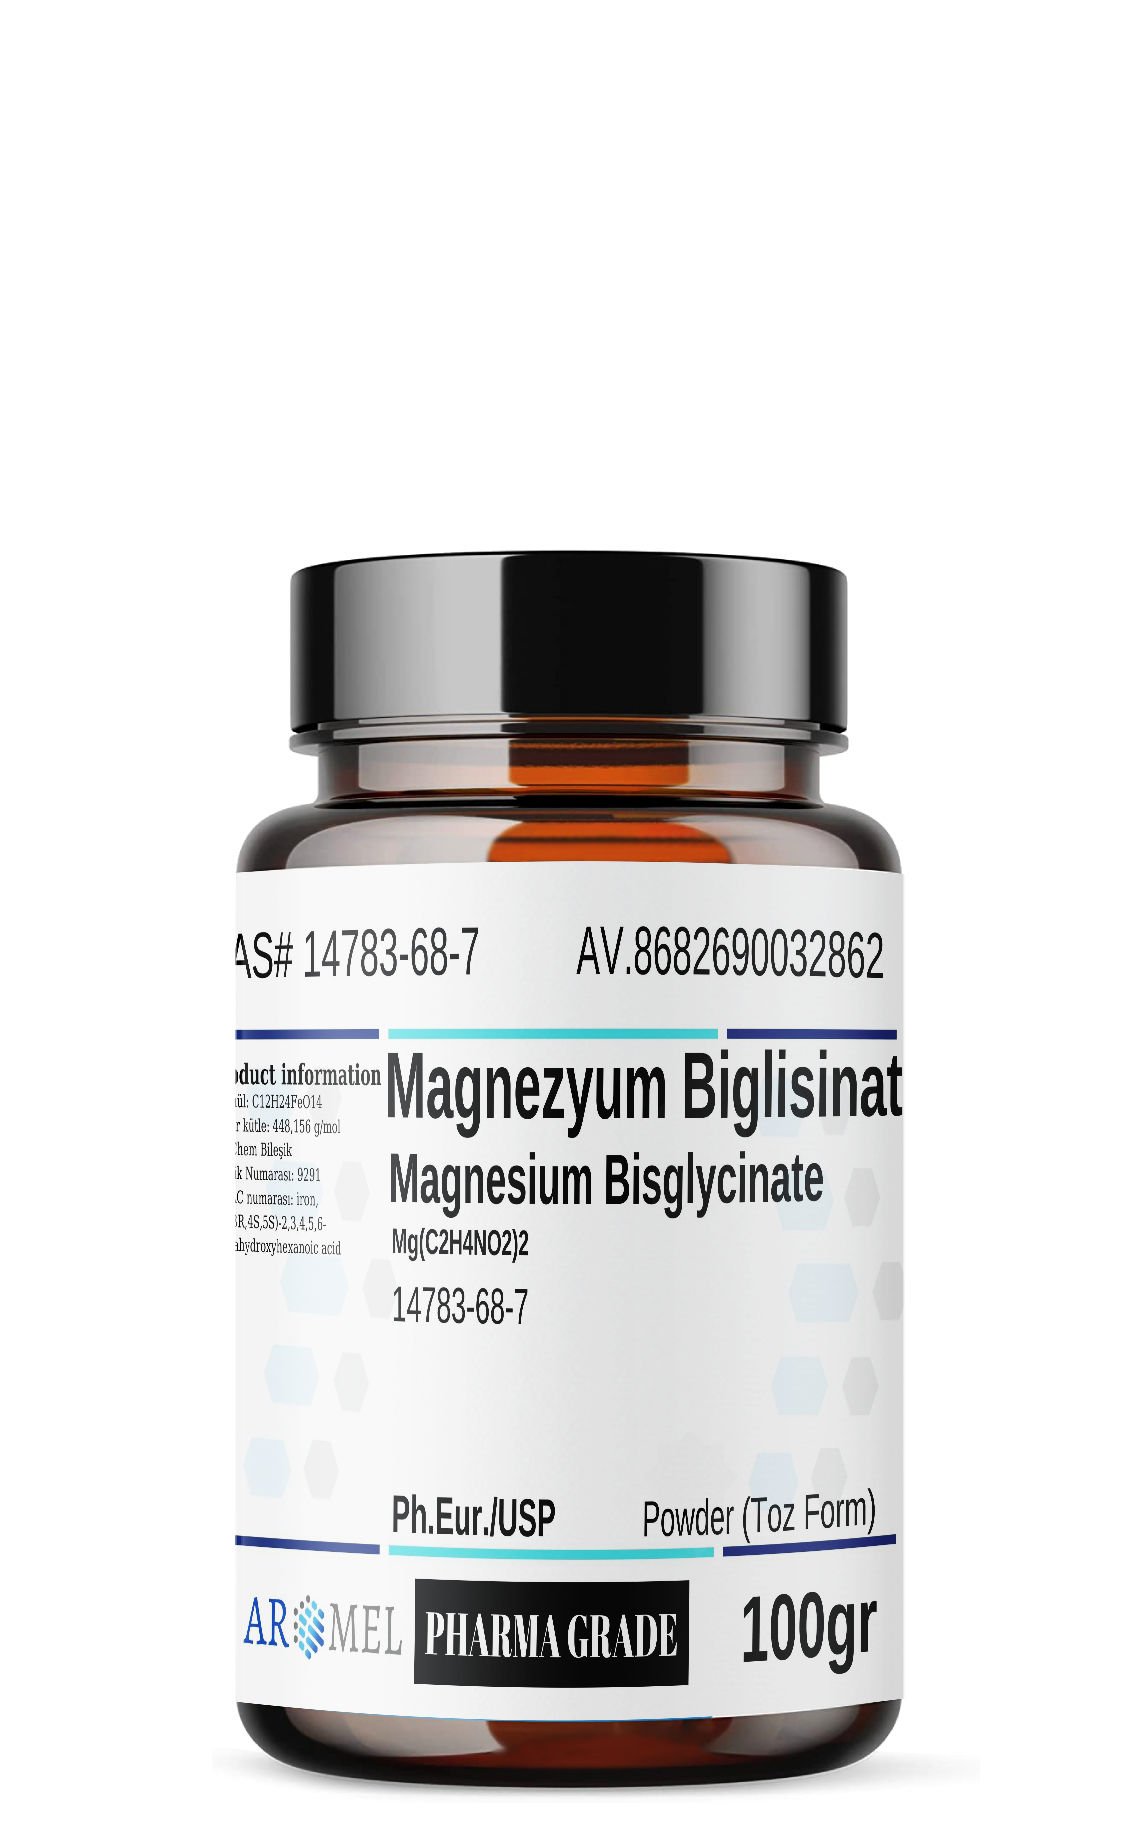 Aromel Magnezyum Biglisinat | 100 gr | Magnesium Bisglycinate